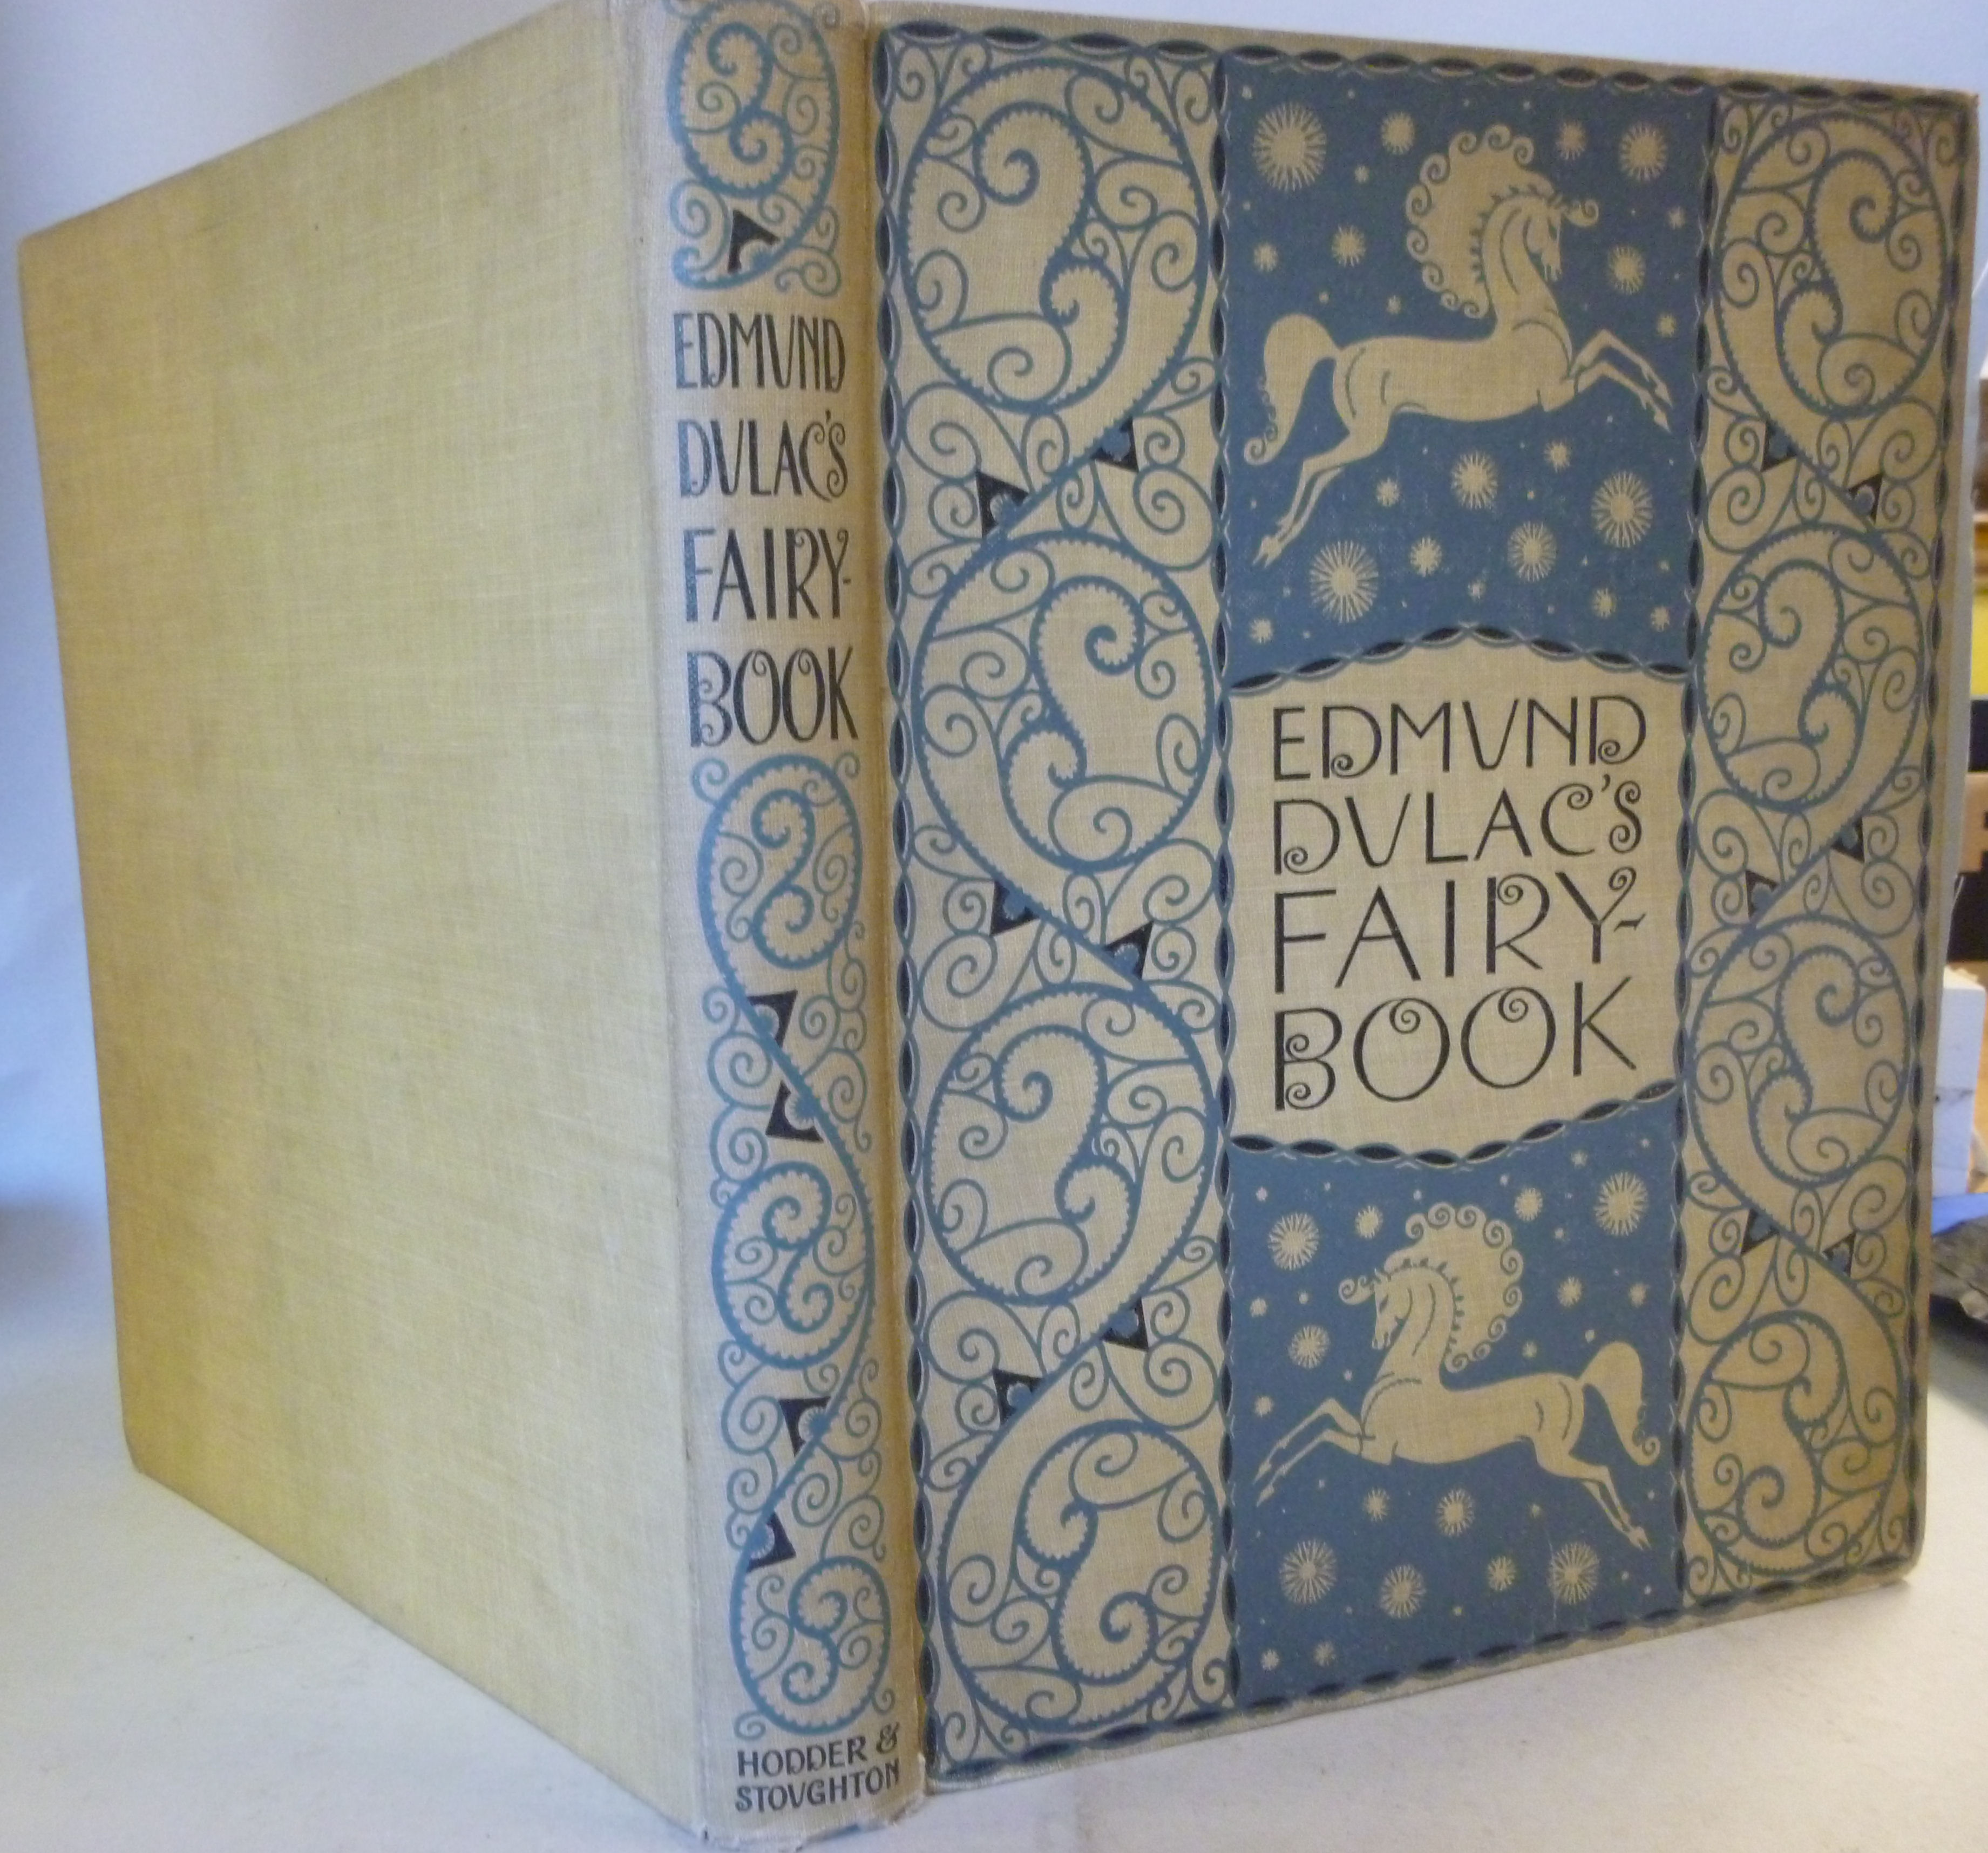 Book: 'Edmund Dulac's Fairy Book' Fairy